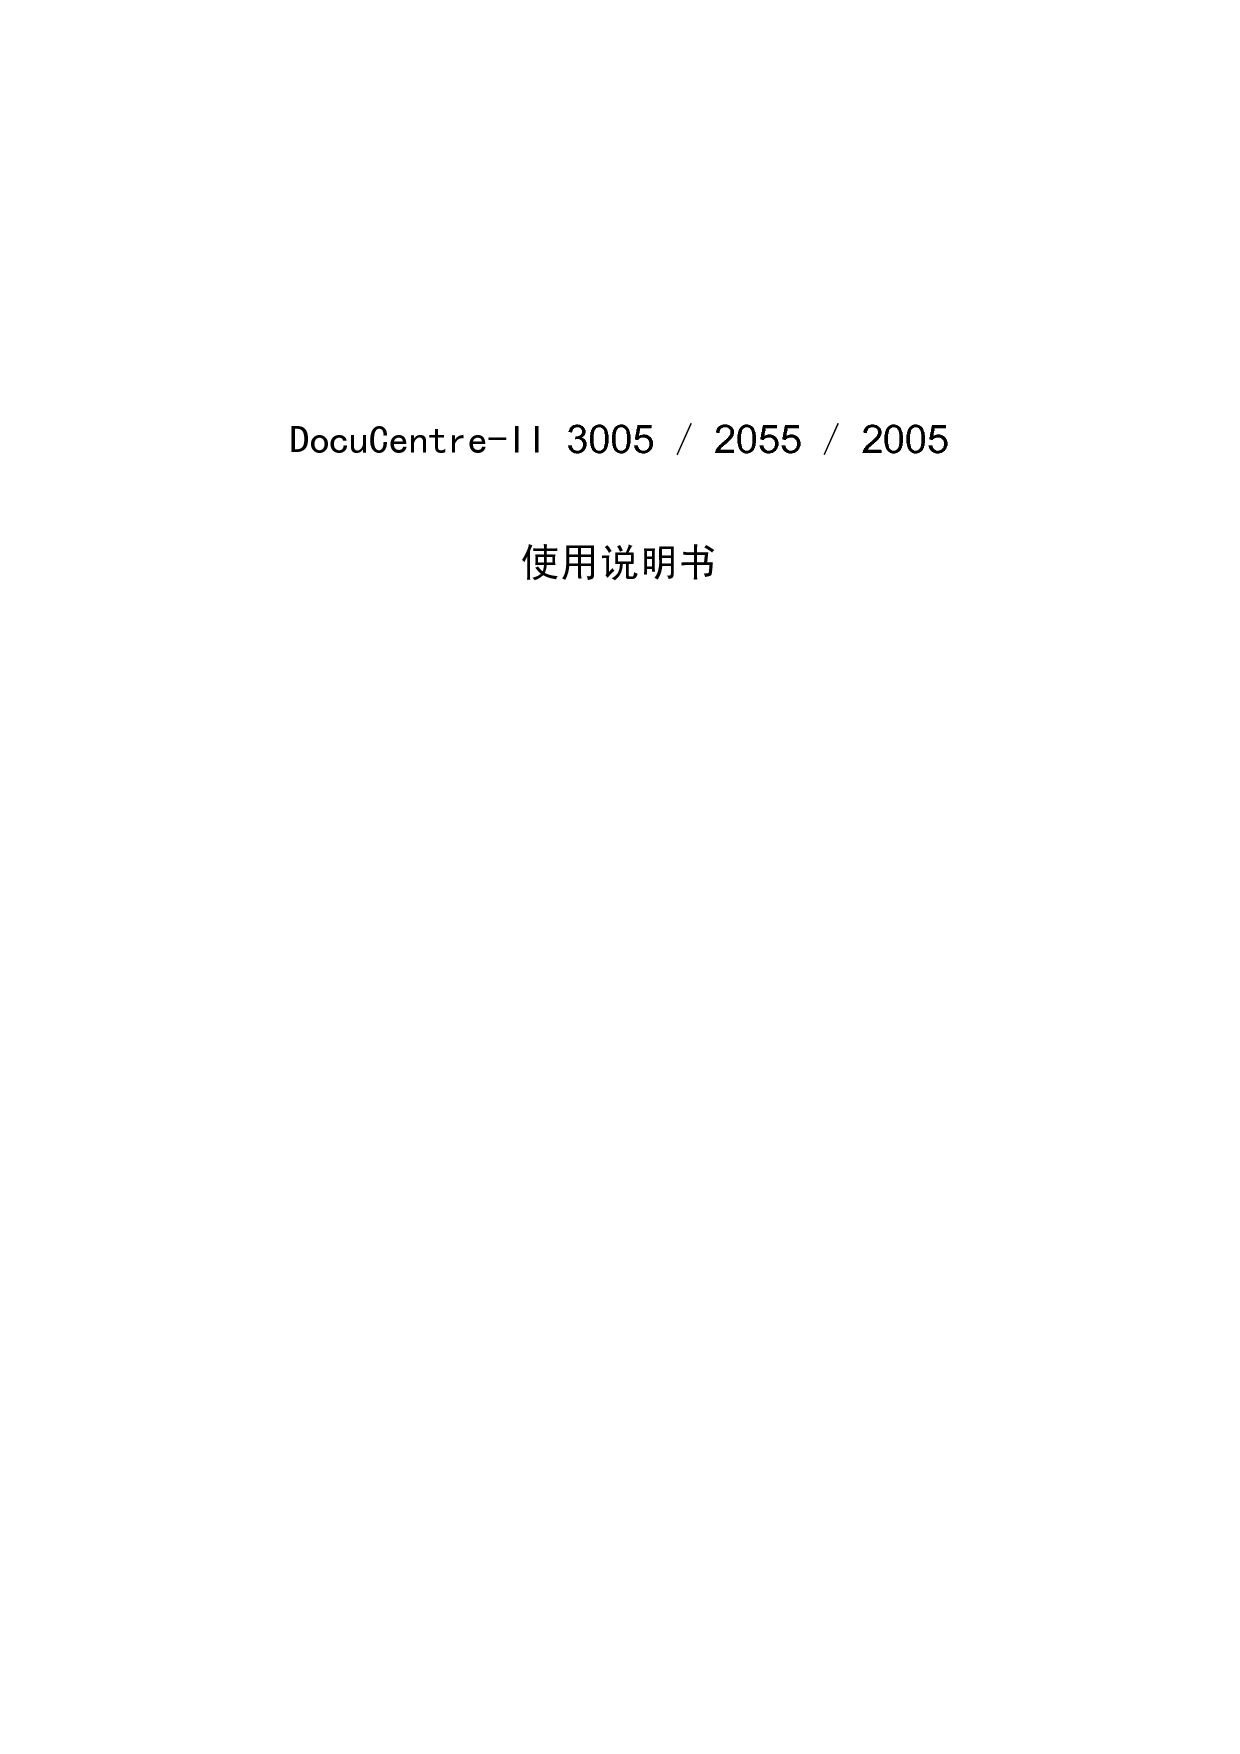 富士施乐 Fuji Xerox DocuCentre-II 2005 使用说明书 封面